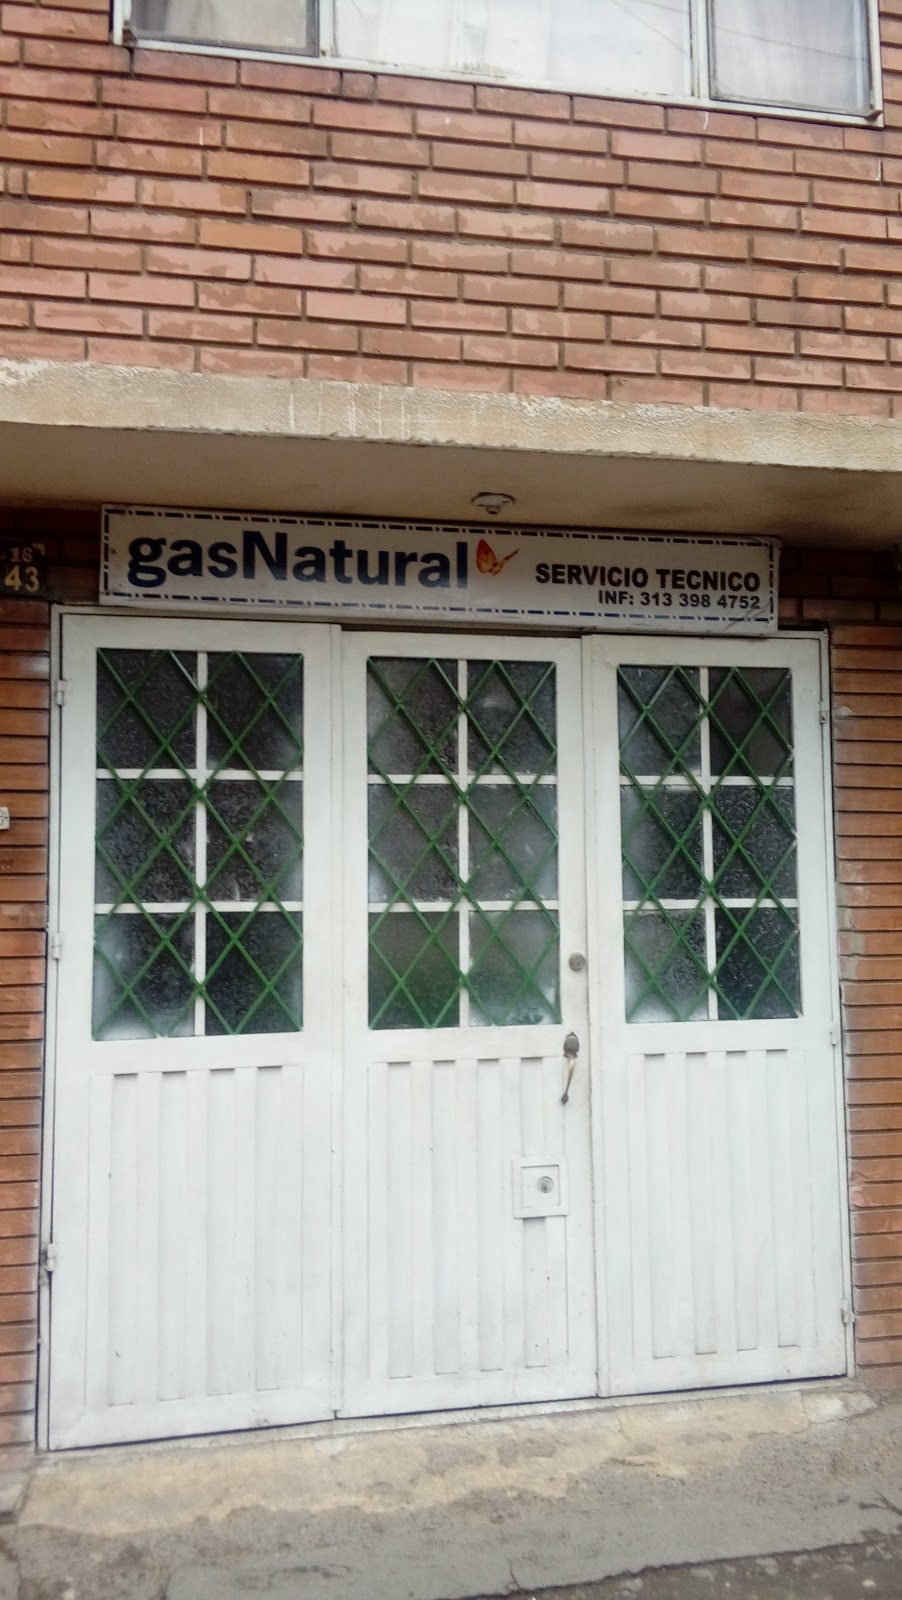 Gas Natural Servicio Tecnico